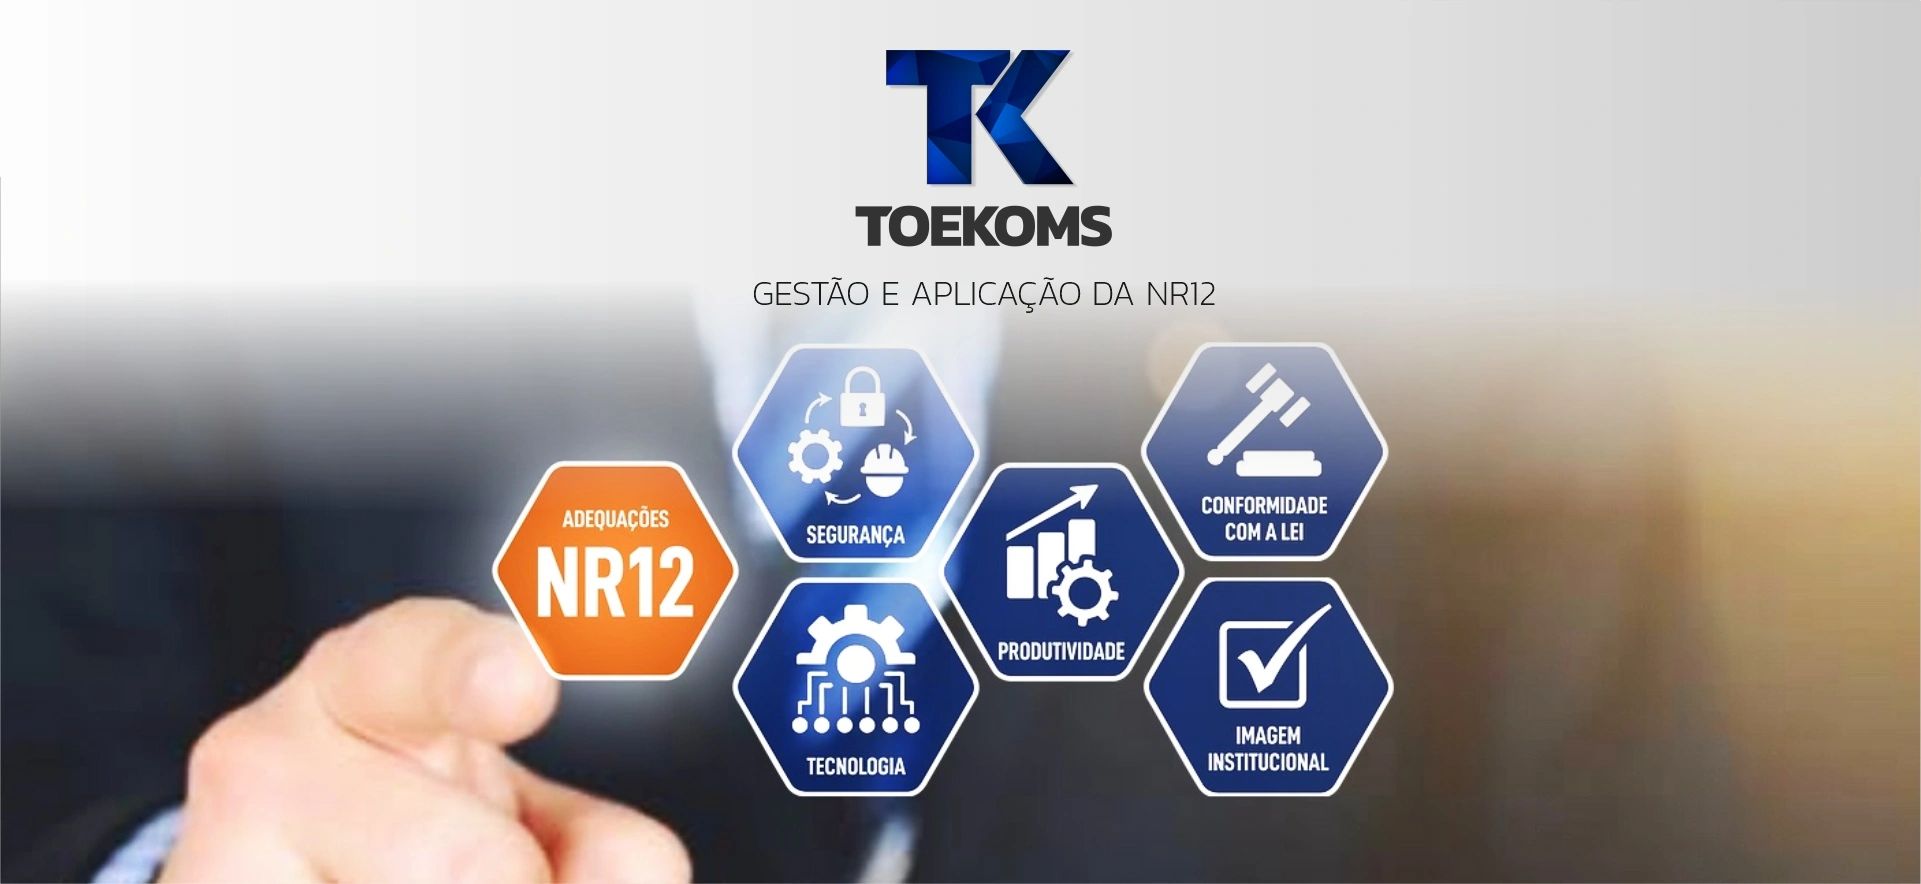 A TOEKOMS atua há 12 anos na gestão e aplicação da NR12